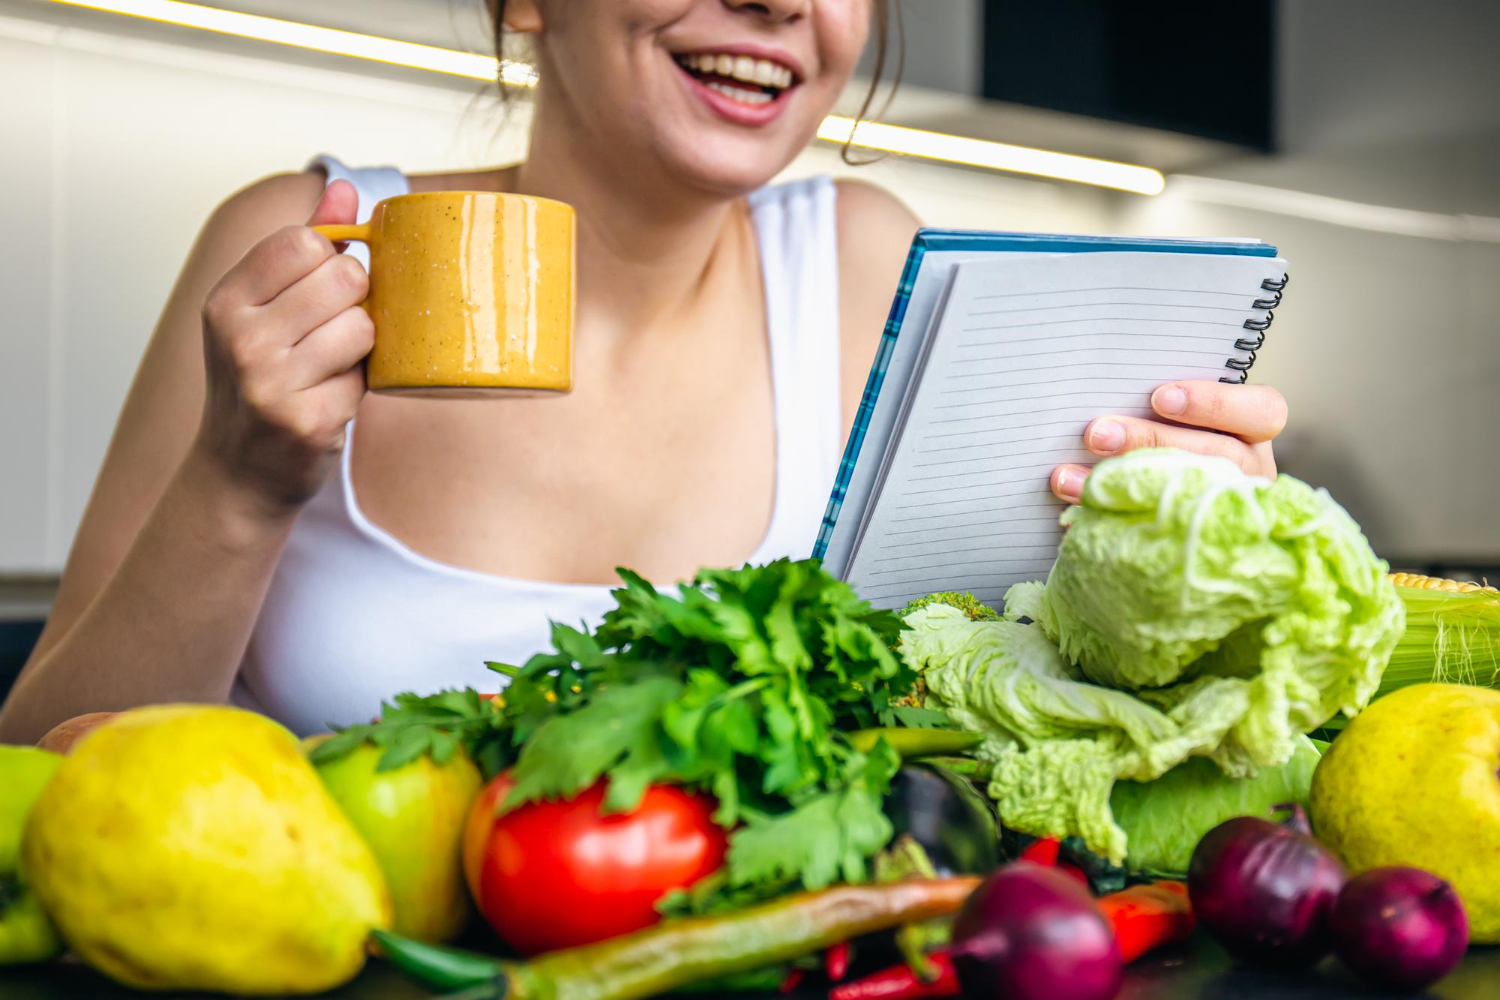 専門家からの「体 脂肪 減らす 食事 メニュー 女」に対するベストアドバイス